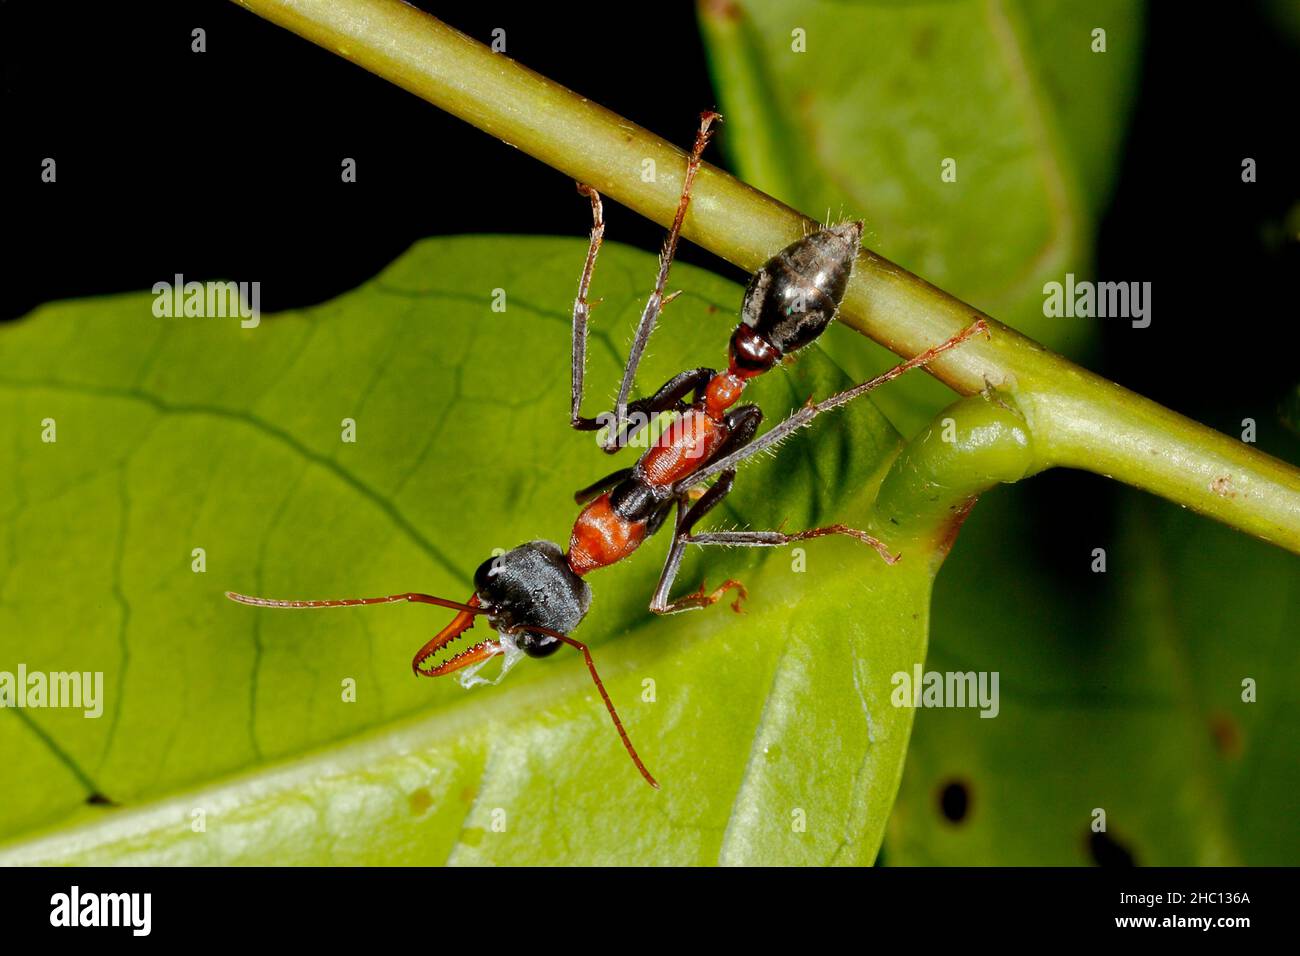 Jumper Ant, auch bekannt als Jumping Jack Ant und Bulldog Ant, Myrmecia nigrocincta. Coffs Harbour, NSW, Australien. Stockfoto